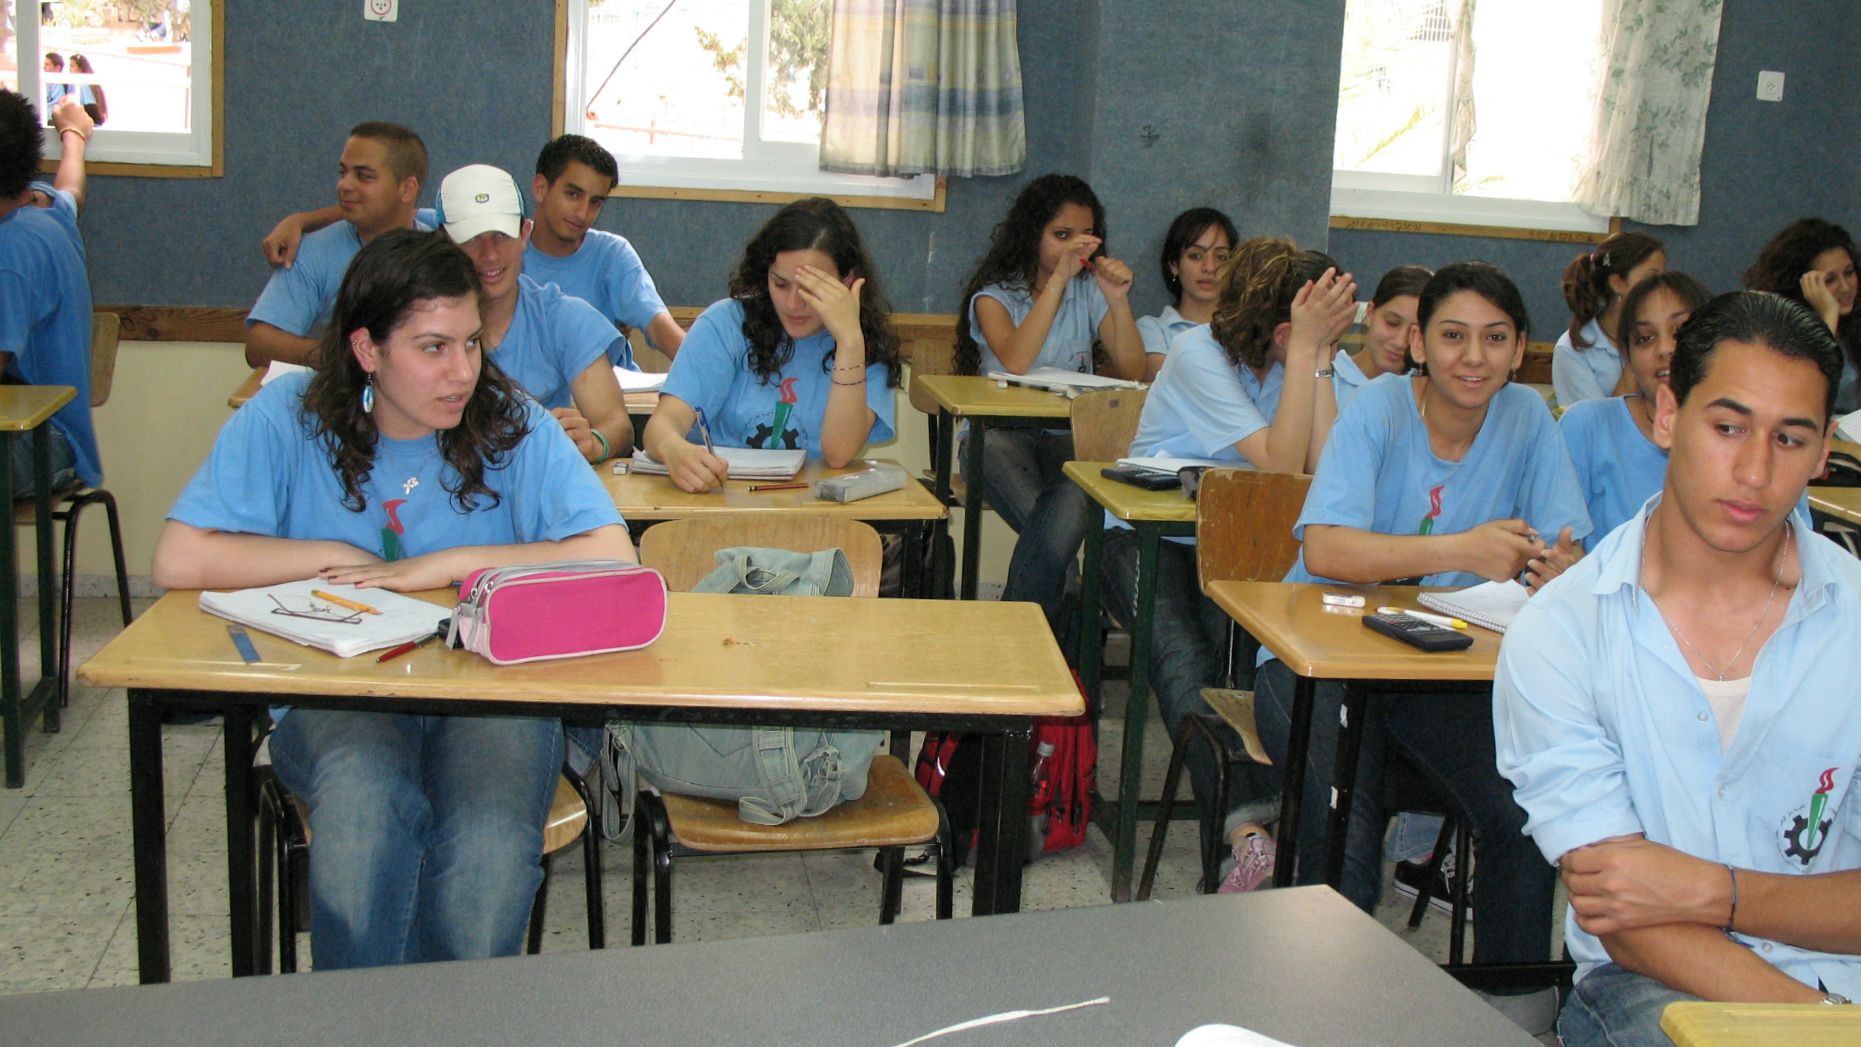 Les élèves des écoles chrétiennes en Israël retrouveront bientôt leurs bancs (Photo:James Emery/Flickr/CC BY 2.0)